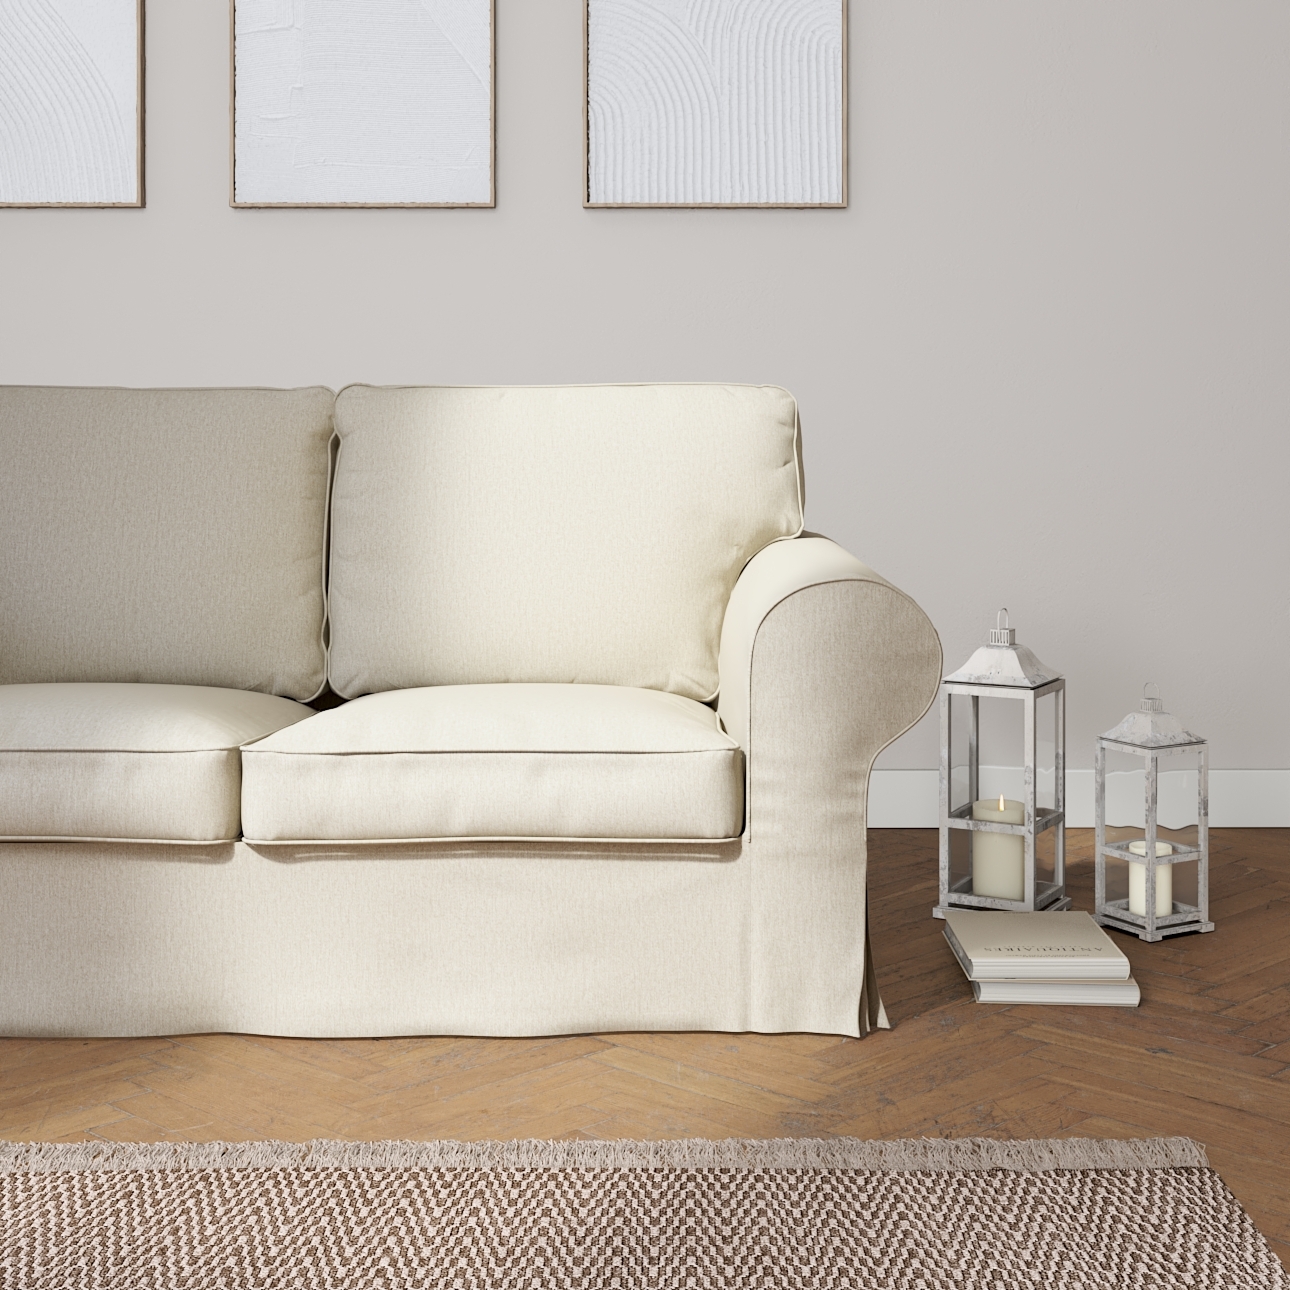 Bezug für Ektorp 2-Sitzer Schlafsofa ALTES Modell, beige-grau, Sofabezug Ek günstig online kaufen